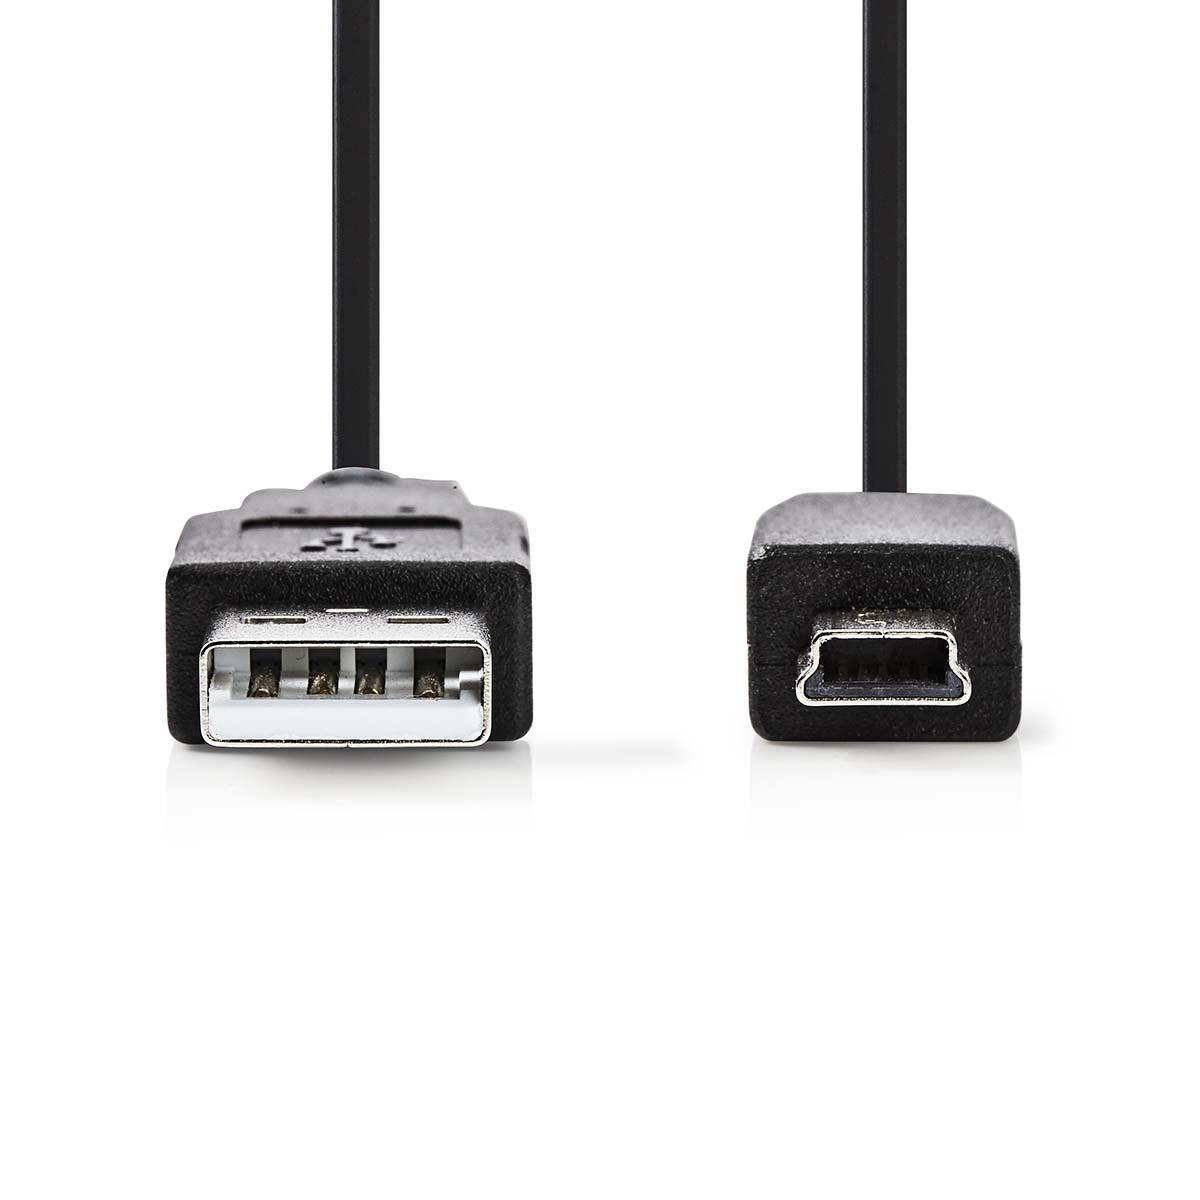 Nedis propojovací kabel USB 2.0 zástrčka USB A - zástrčka USB mini B 5-pin, 3 m (CCGP60300BK30)